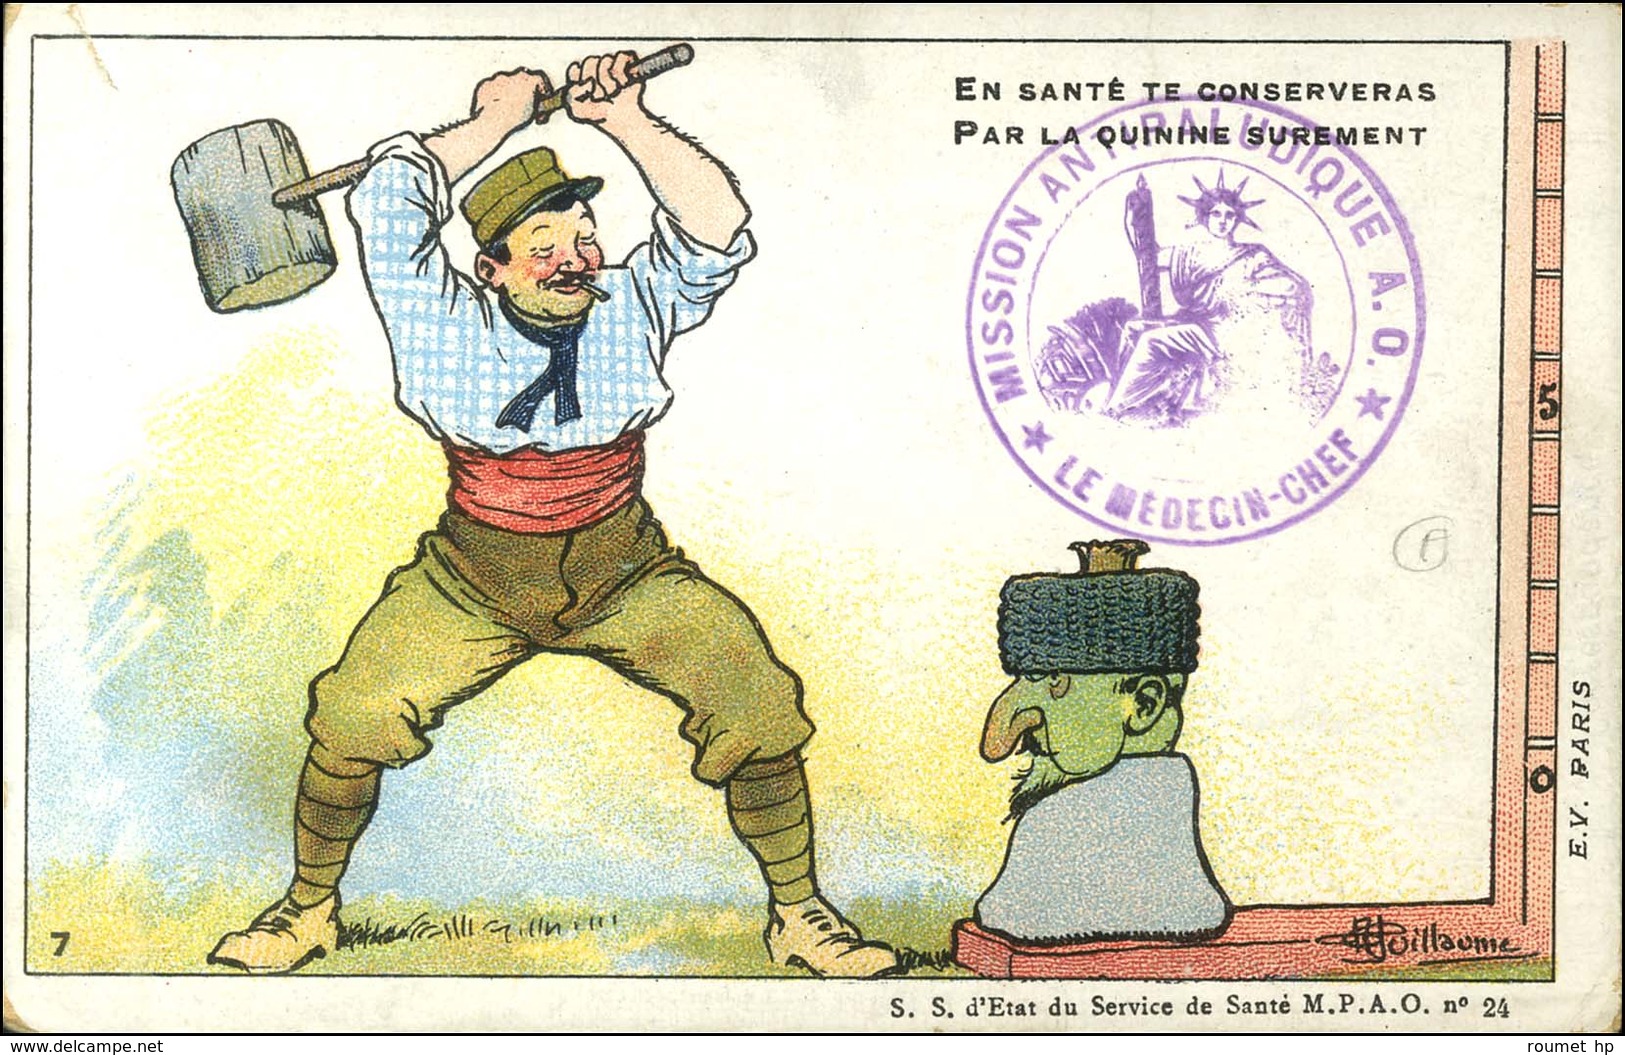 Série de 10 CP illustrées (couleurs) numérotées de 1 à 10 Commandements de l'Institut Pasteur pour le Soldat de l'Armée 